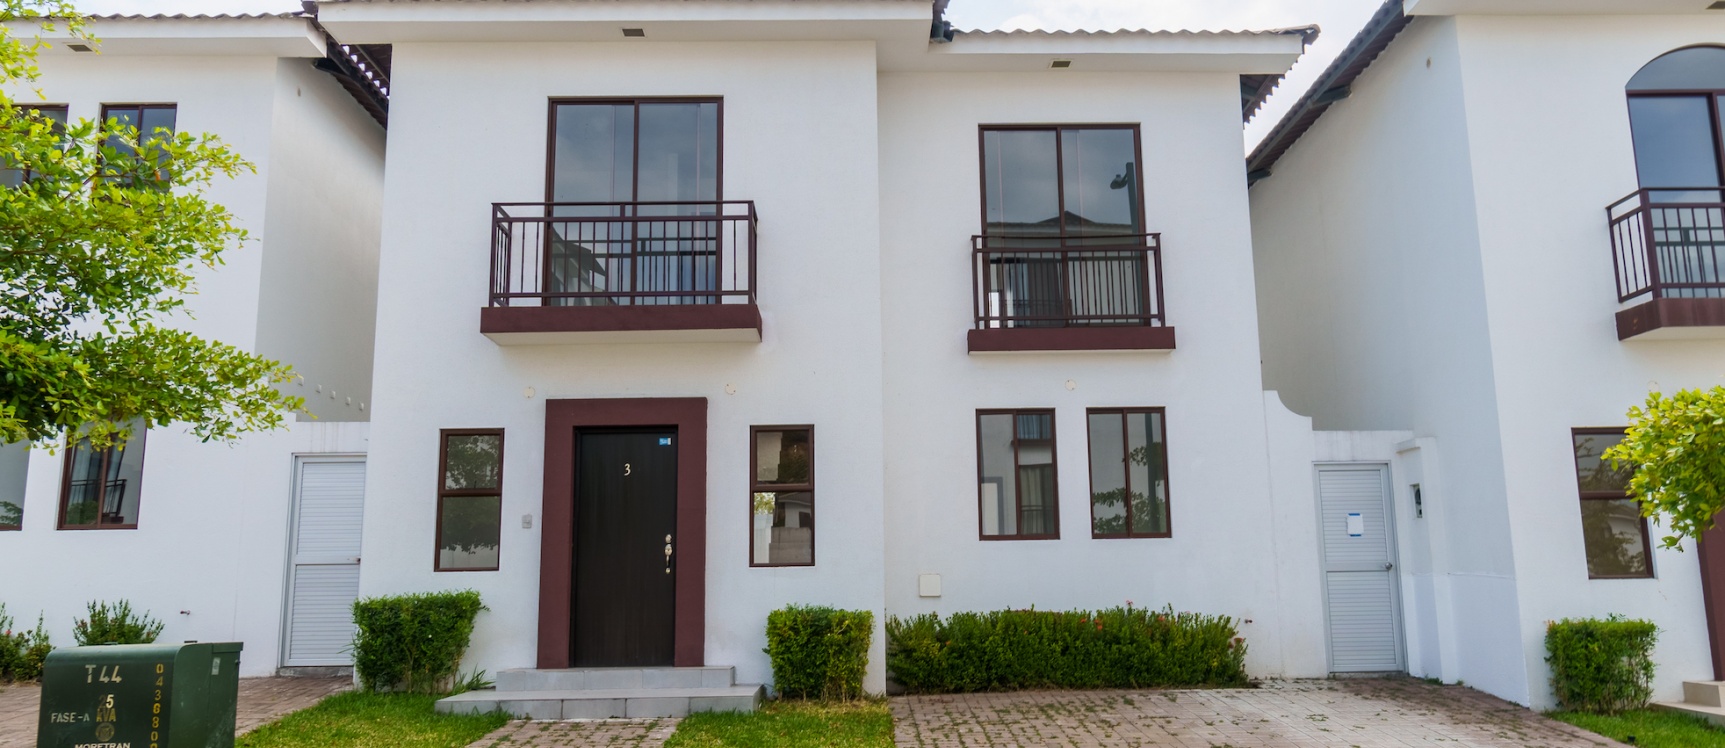 GeoBienes - Casa de 3 habitaciones en venta ubicada en la Urbanización Villas del Bosque - Plusvalia Guayaquil Casas de venta y alquiler Inmobiliaria Ecuador